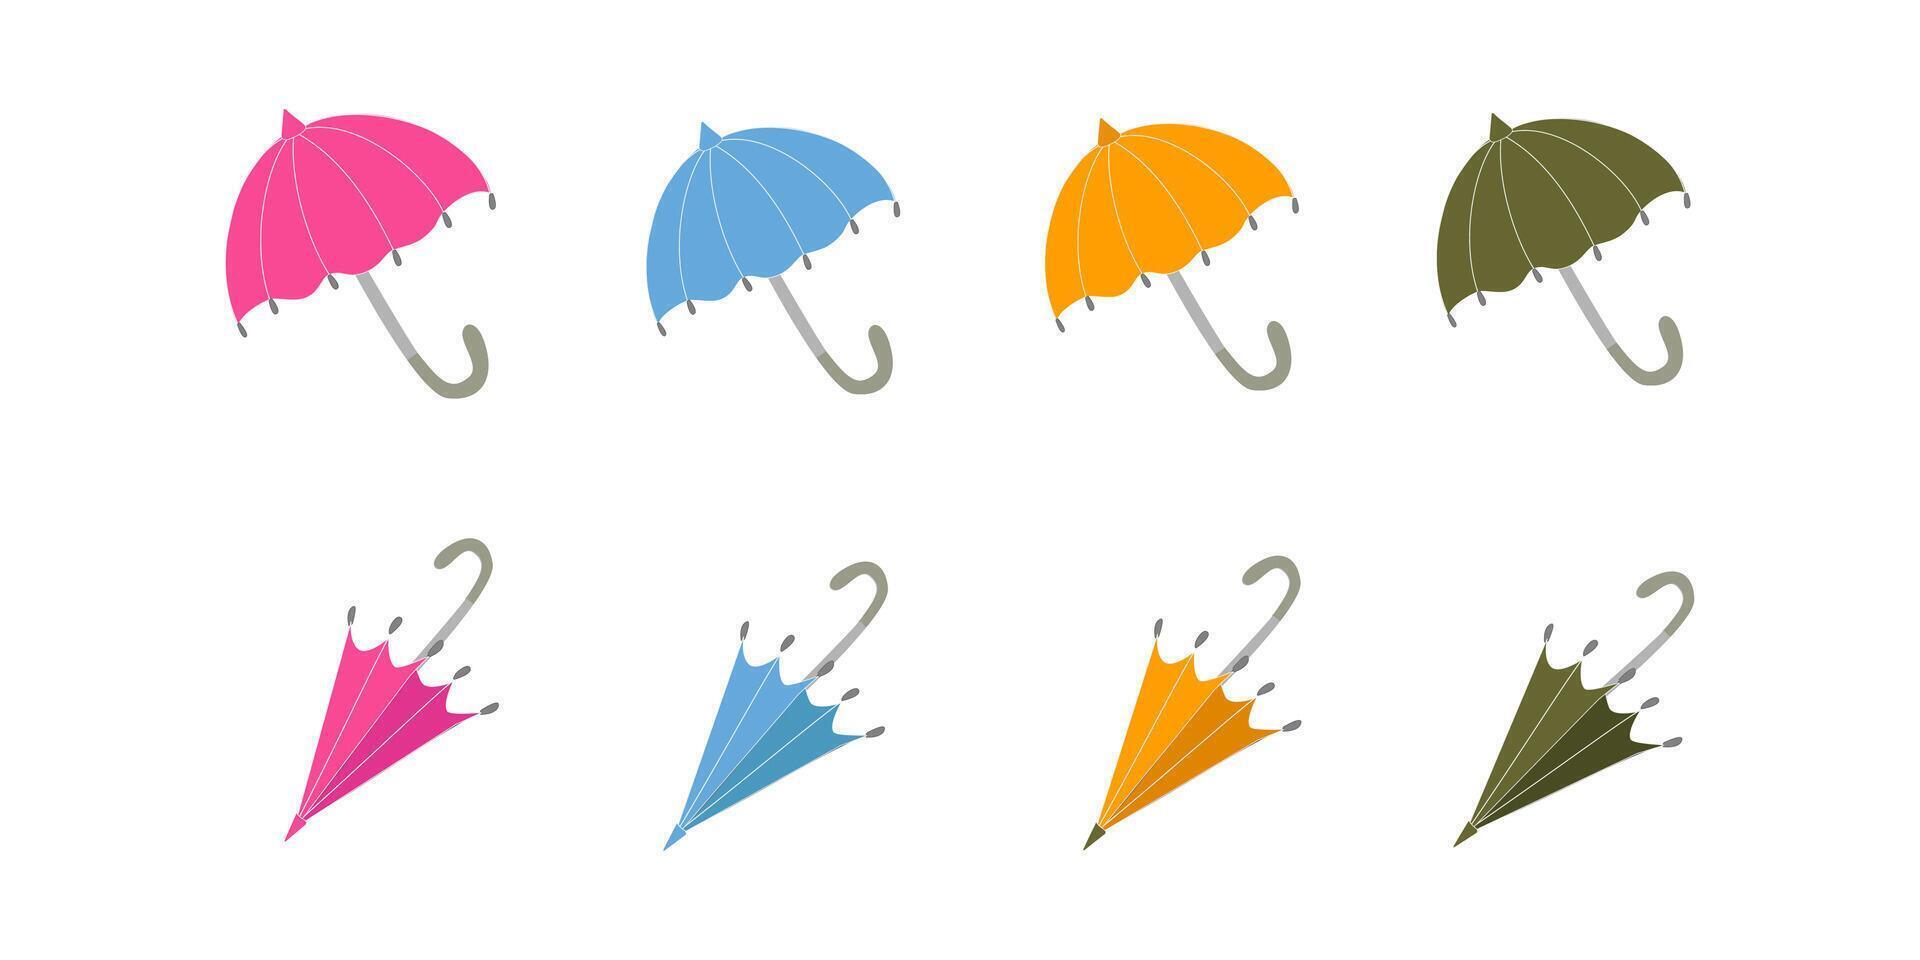 reeks van vrouwen helder paraplu's, een medeplichtig voor bescherming van regen en wind, groente, roze, geel en blauw. paraplu's Open en gevouwen. gekleurde vector illustratie